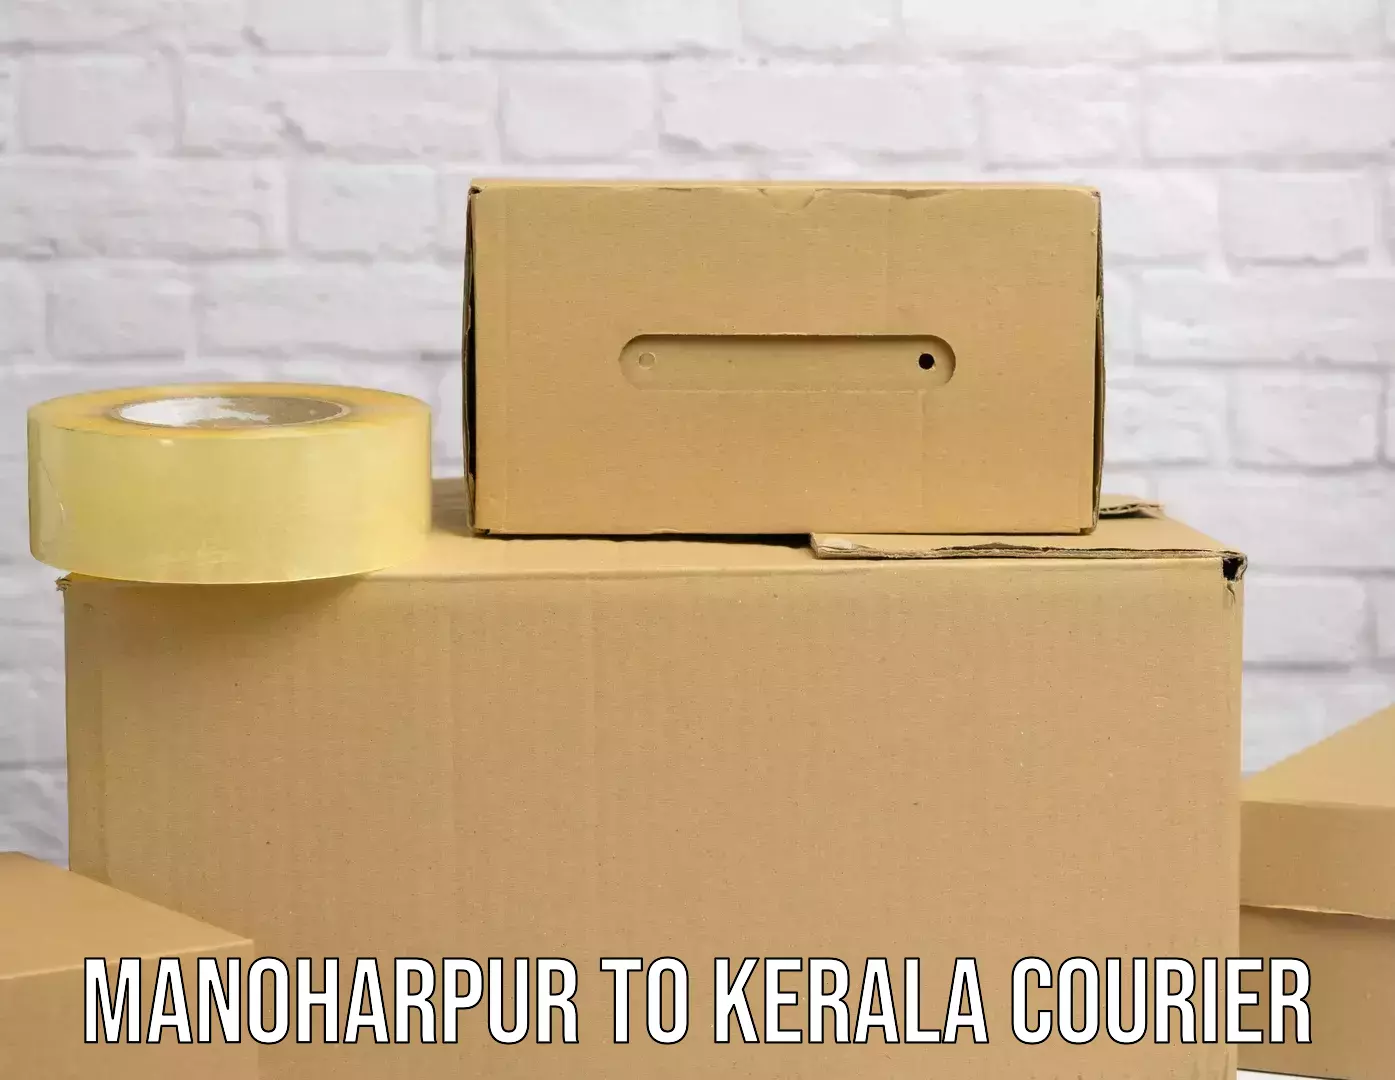 Door-to-door freight service Manoharpur to Kerala